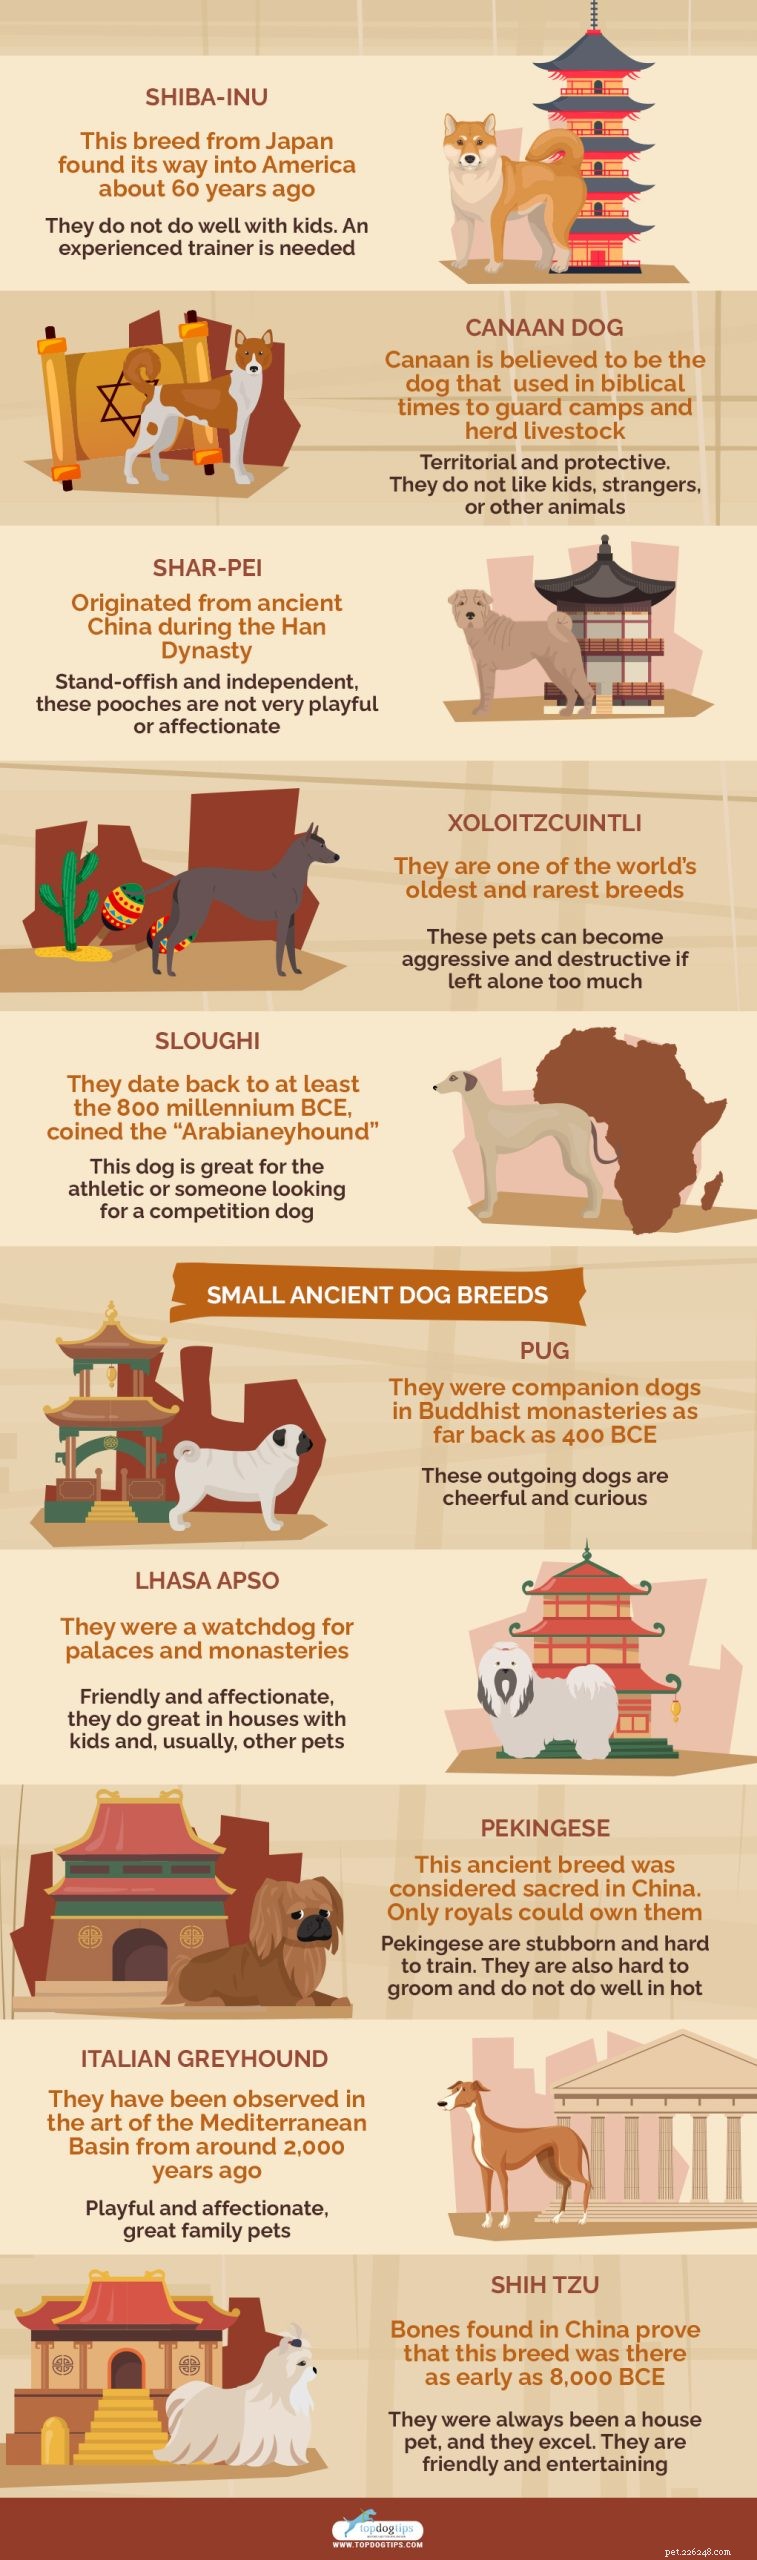 20 nejstarších psích plemen